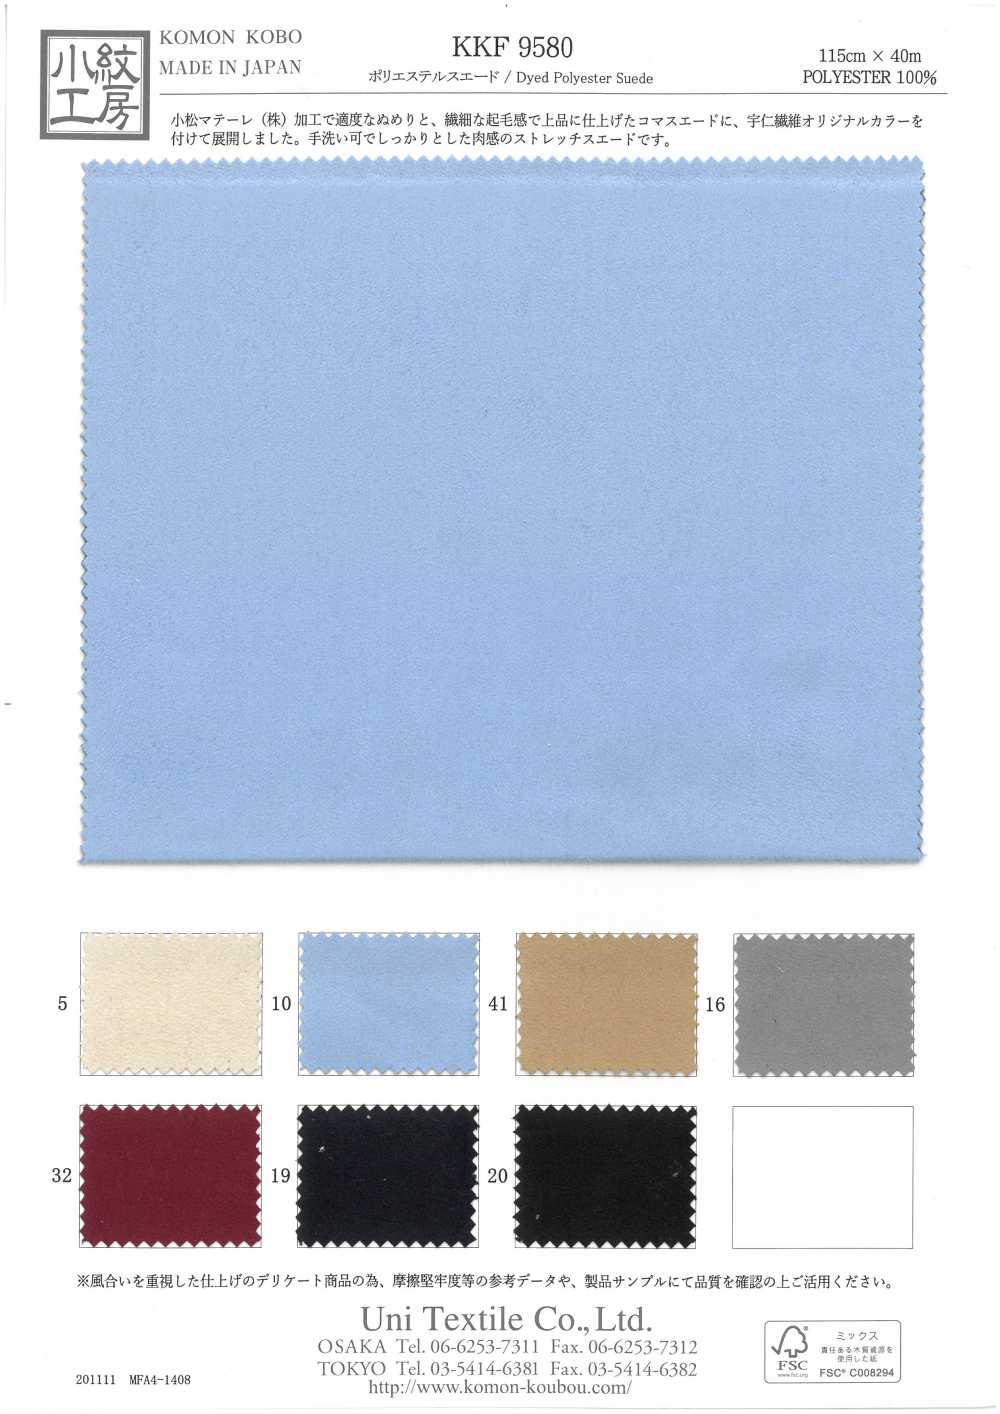 KKF9580 Da Da Lộn Polyester[Vải] Uni Textile